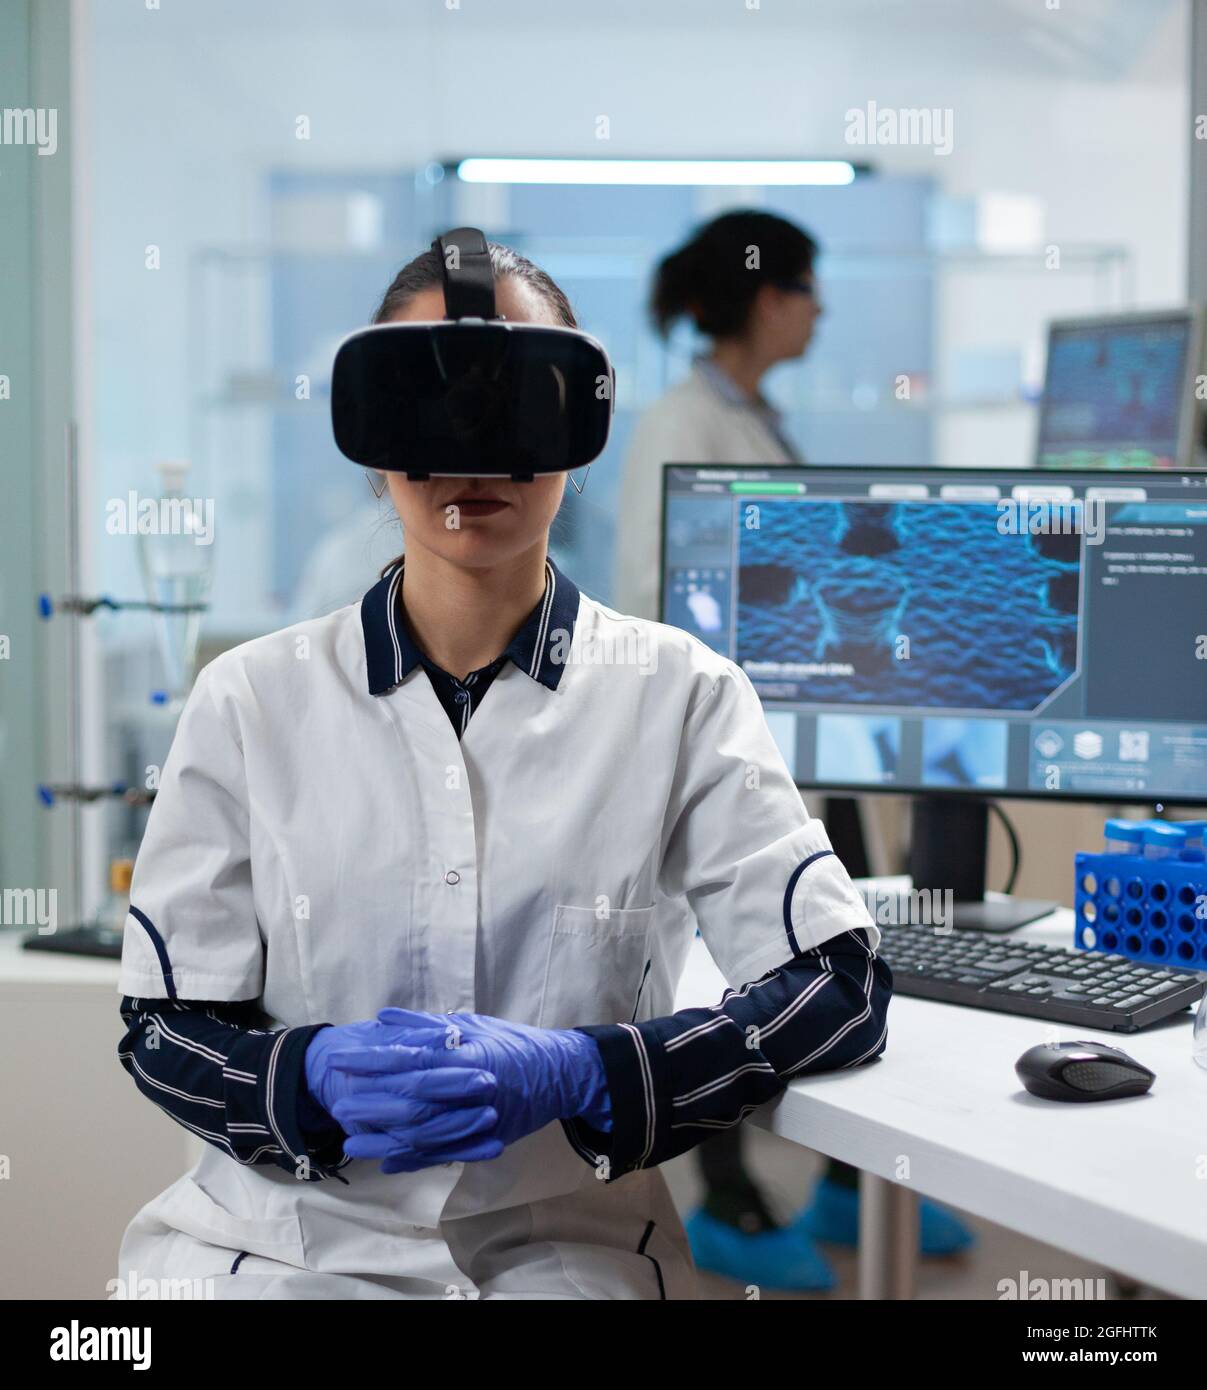 Biologiste scientifique femme portant un casque de réalité virtuelle analysant l'expertise des vaccins médicaux pendant une expérience biotechnologique travaillant dans un laboratoire hospitalier de microbiologie. Enquête scientifique Banque D'Images